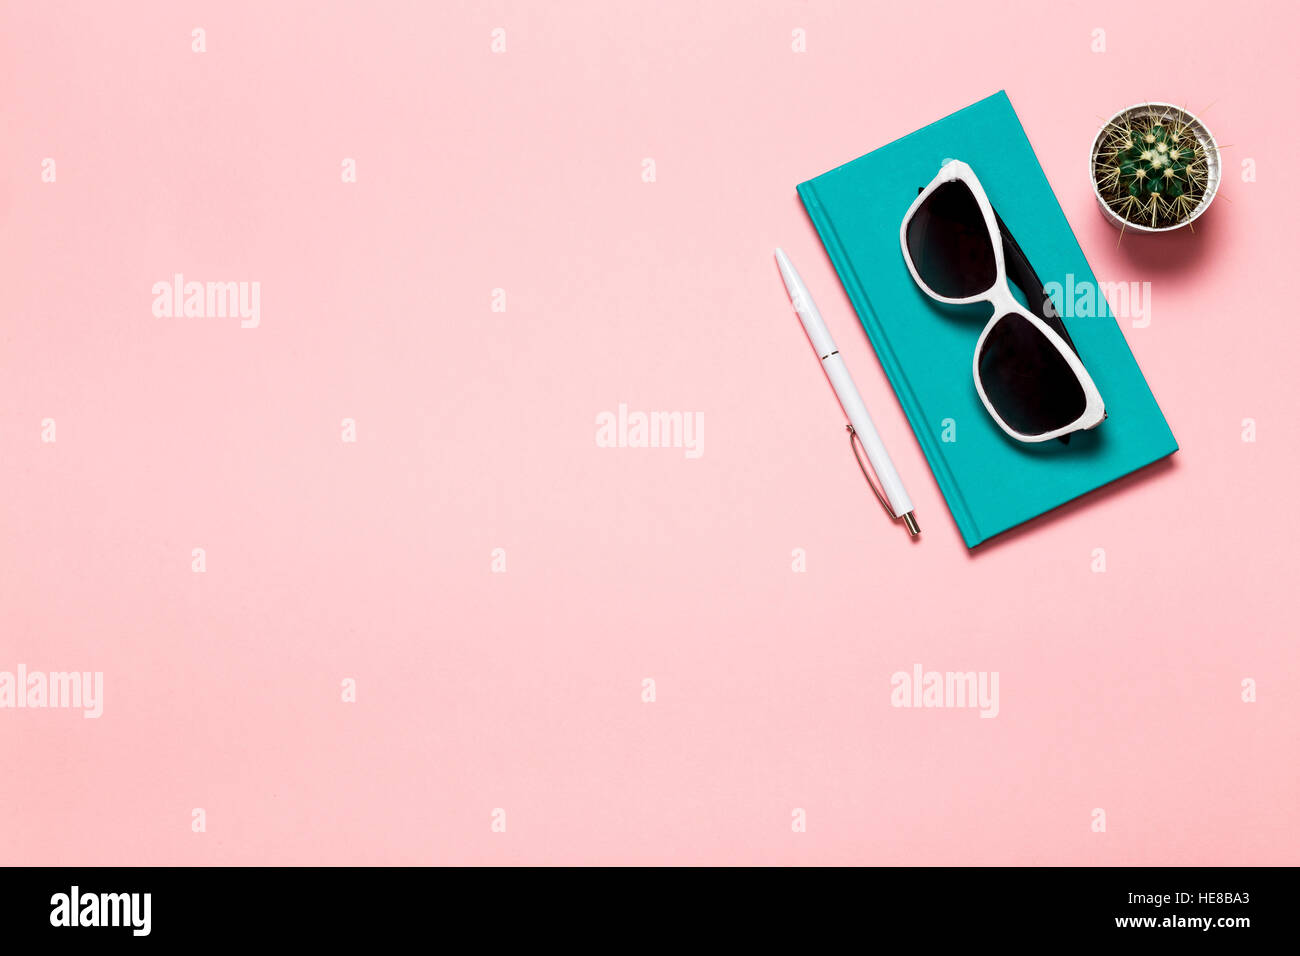 Kreative flach legen Foto des Arbeitsbereichs Schreibtisch mit Aquamarin Notebook, Brillen, Kaktus mit Kopie Raum rosa Hintergrund, minimalistischen Stil Stockfoto